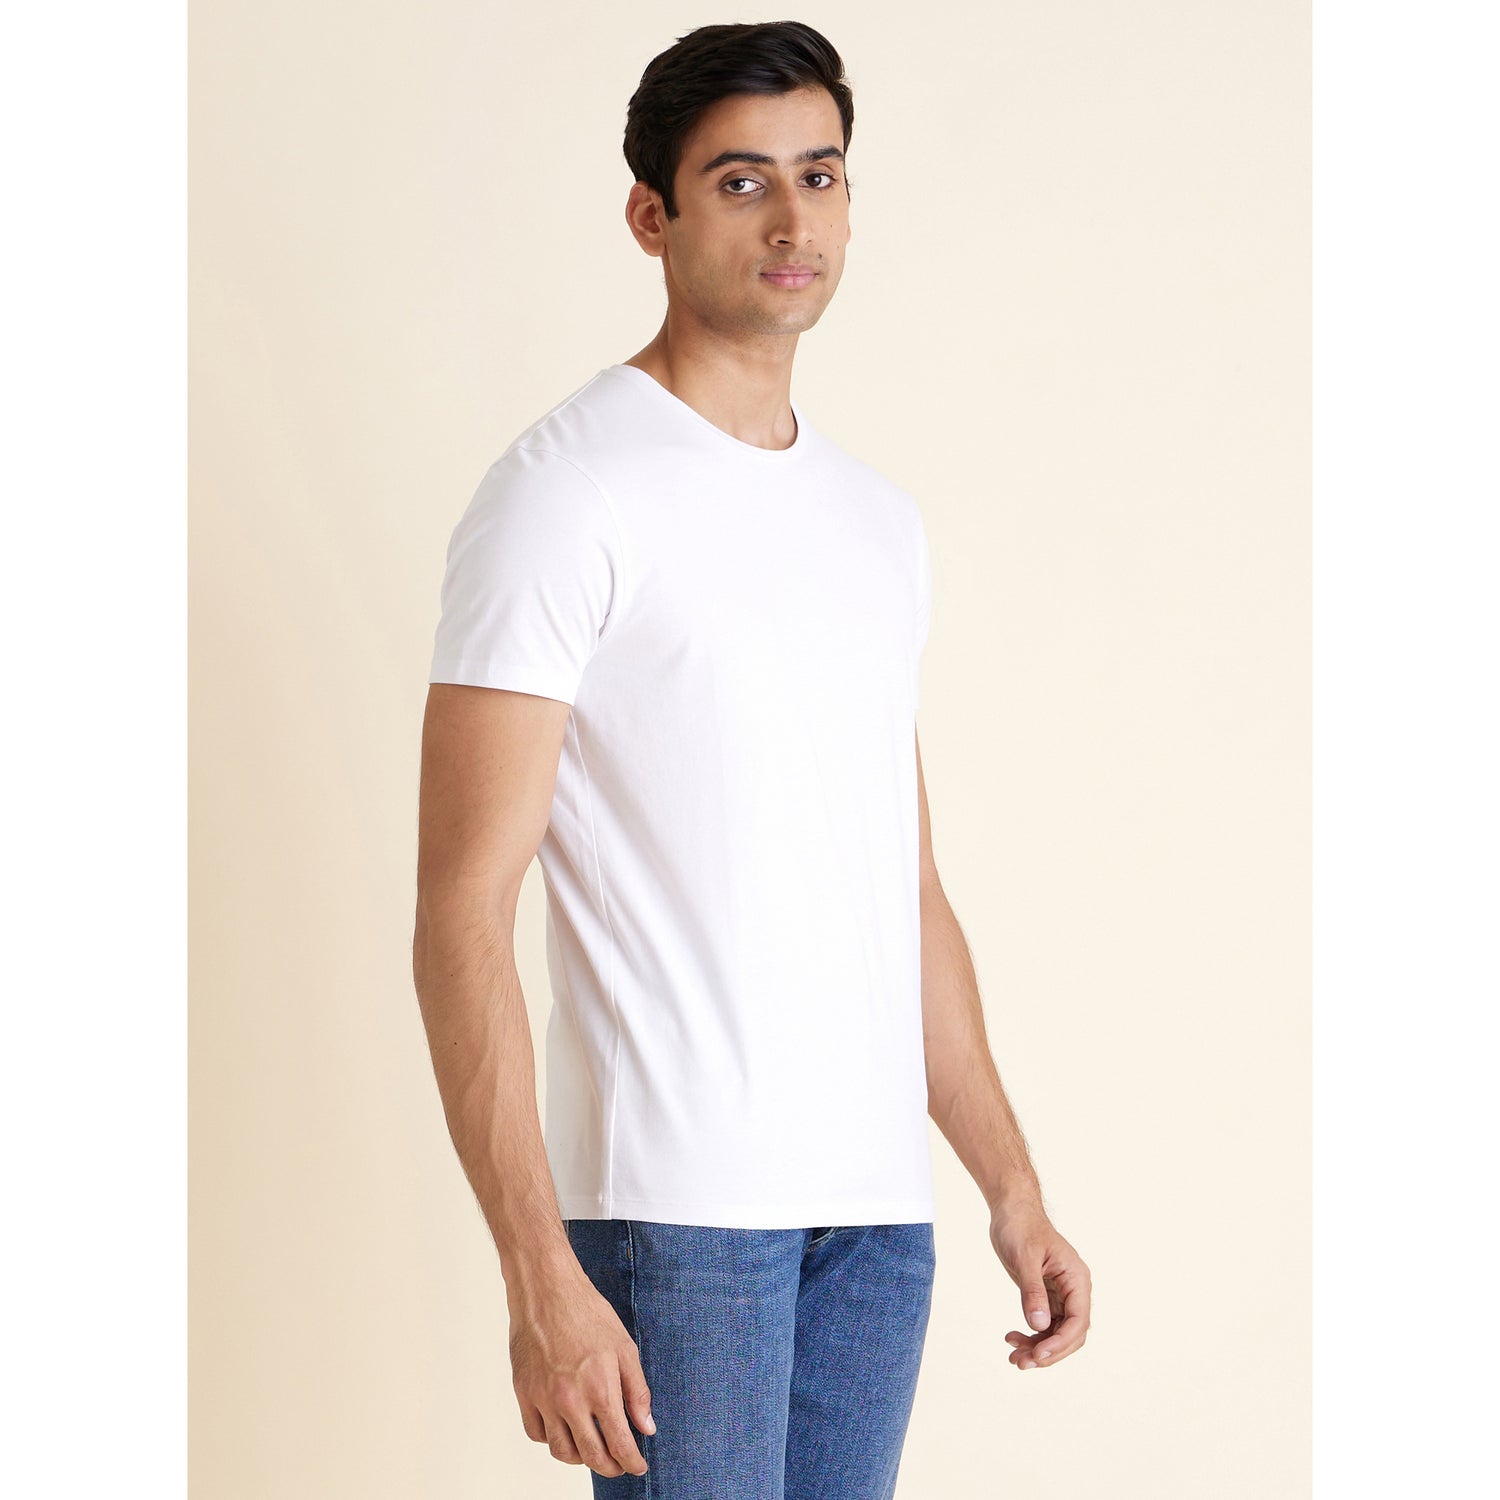 White Round Neck Cotton T-shirt (NEUNIR)